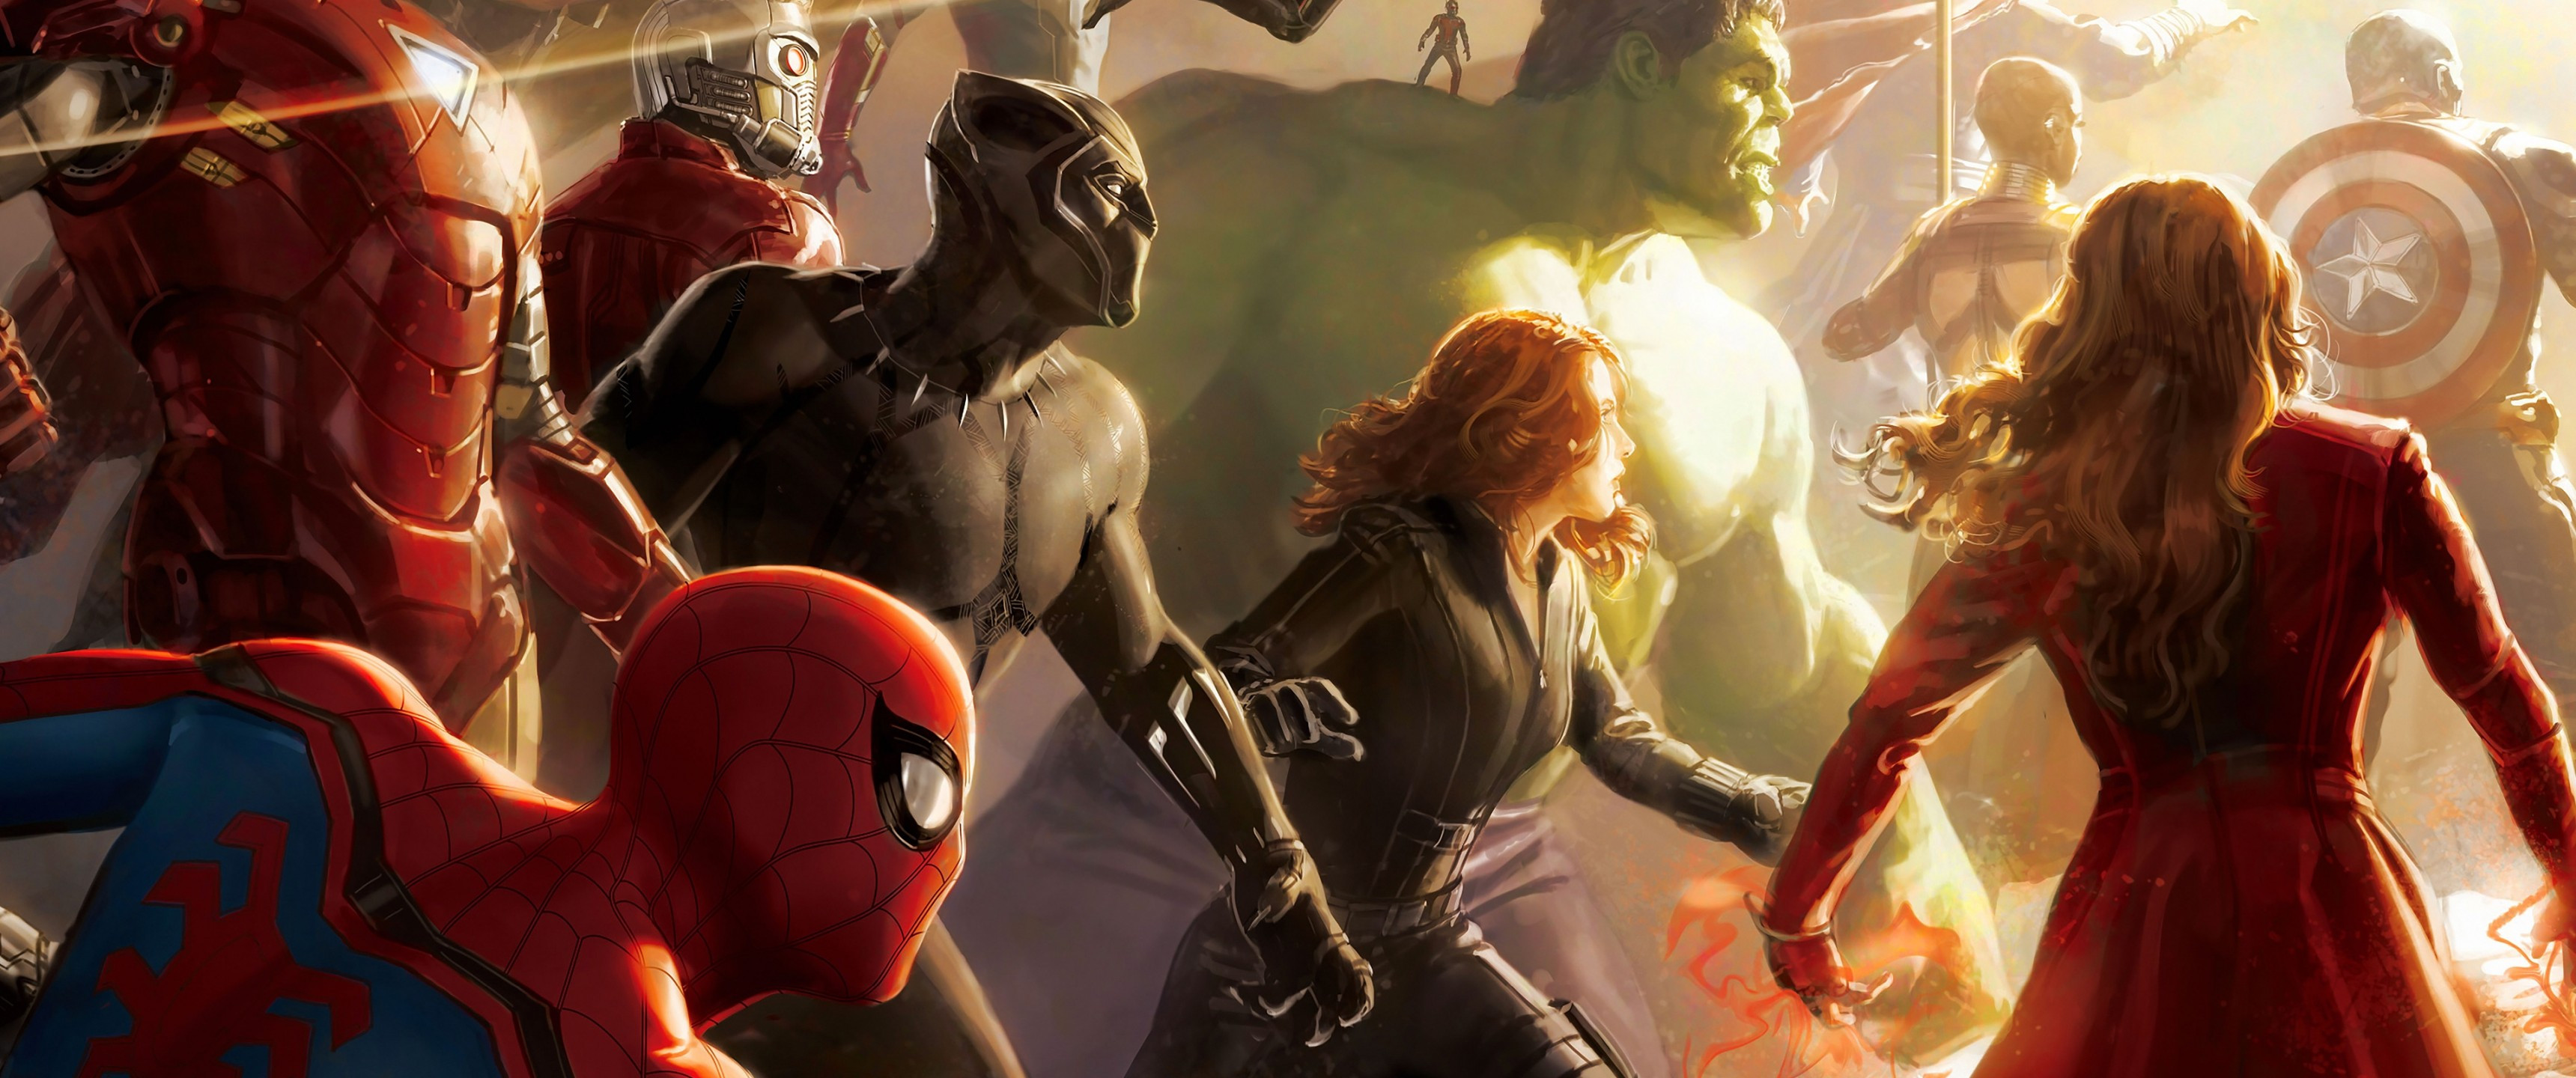 Avengers Infinity War Digital Art Wallpaper